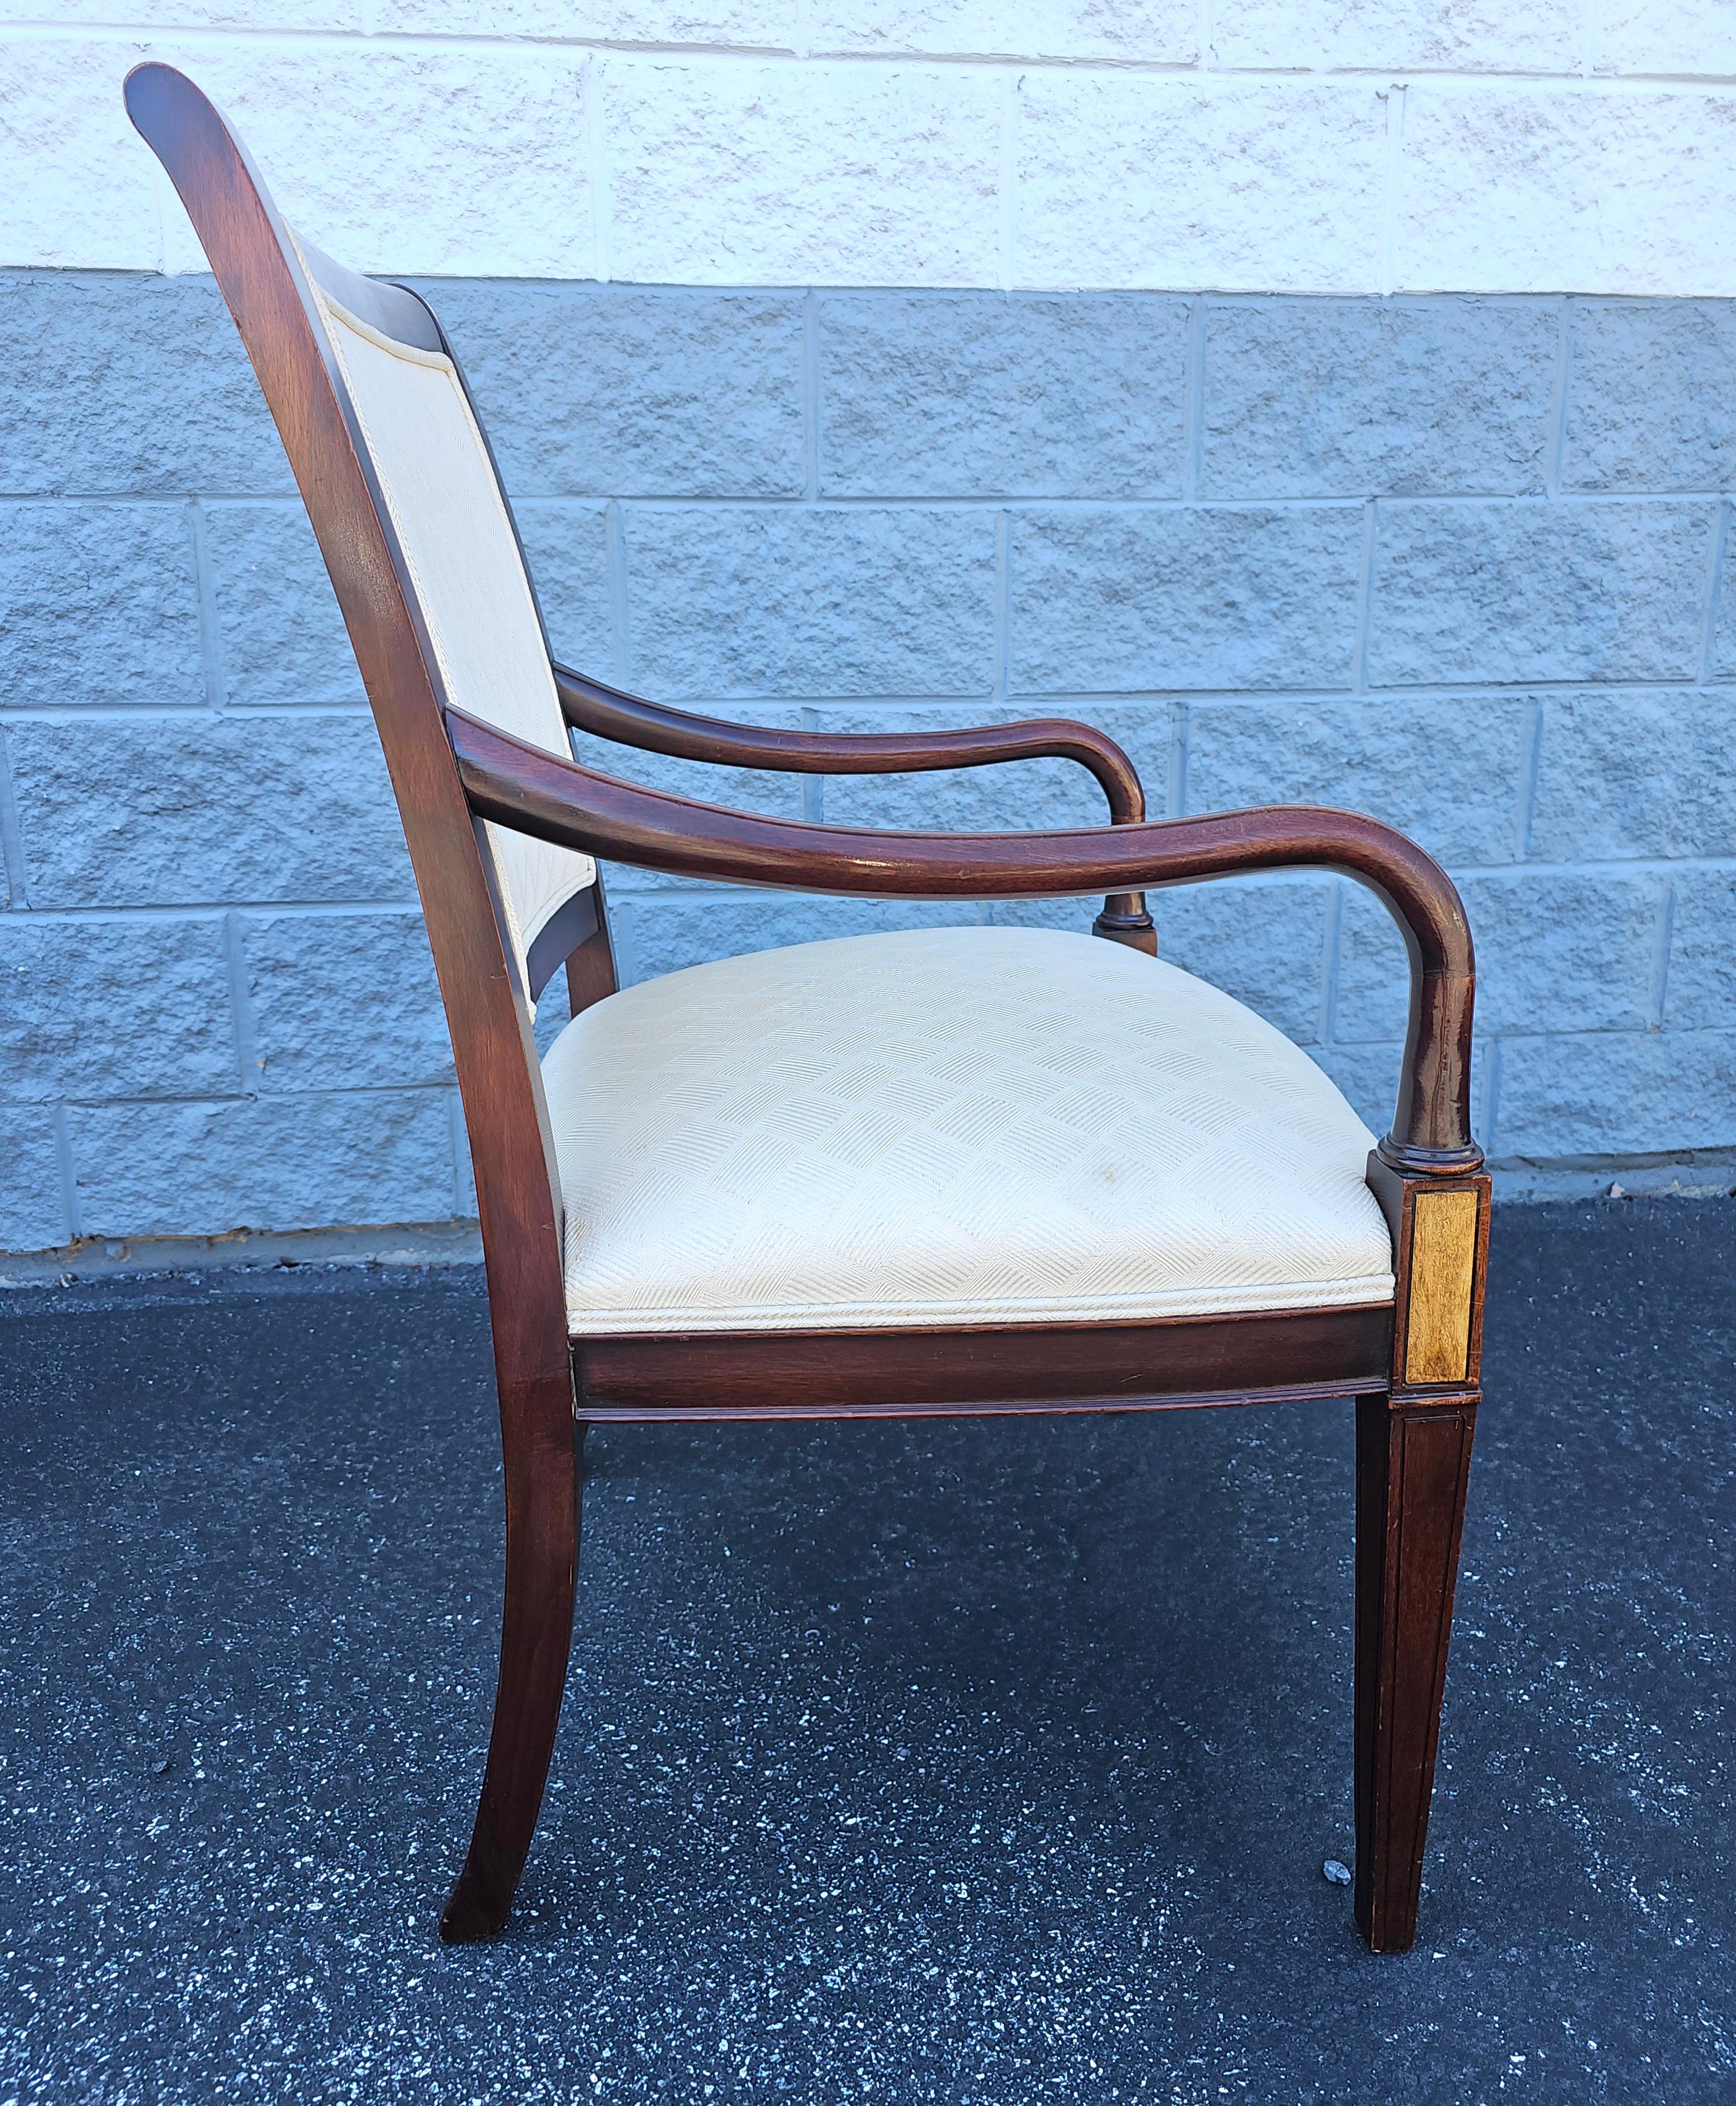 Hickory-Stuhl aus dem späten 20. Jahrhundert Mahagoni mit Intarsien und gepolstertem Sessel im Sheraton-Stil
Maße: 25